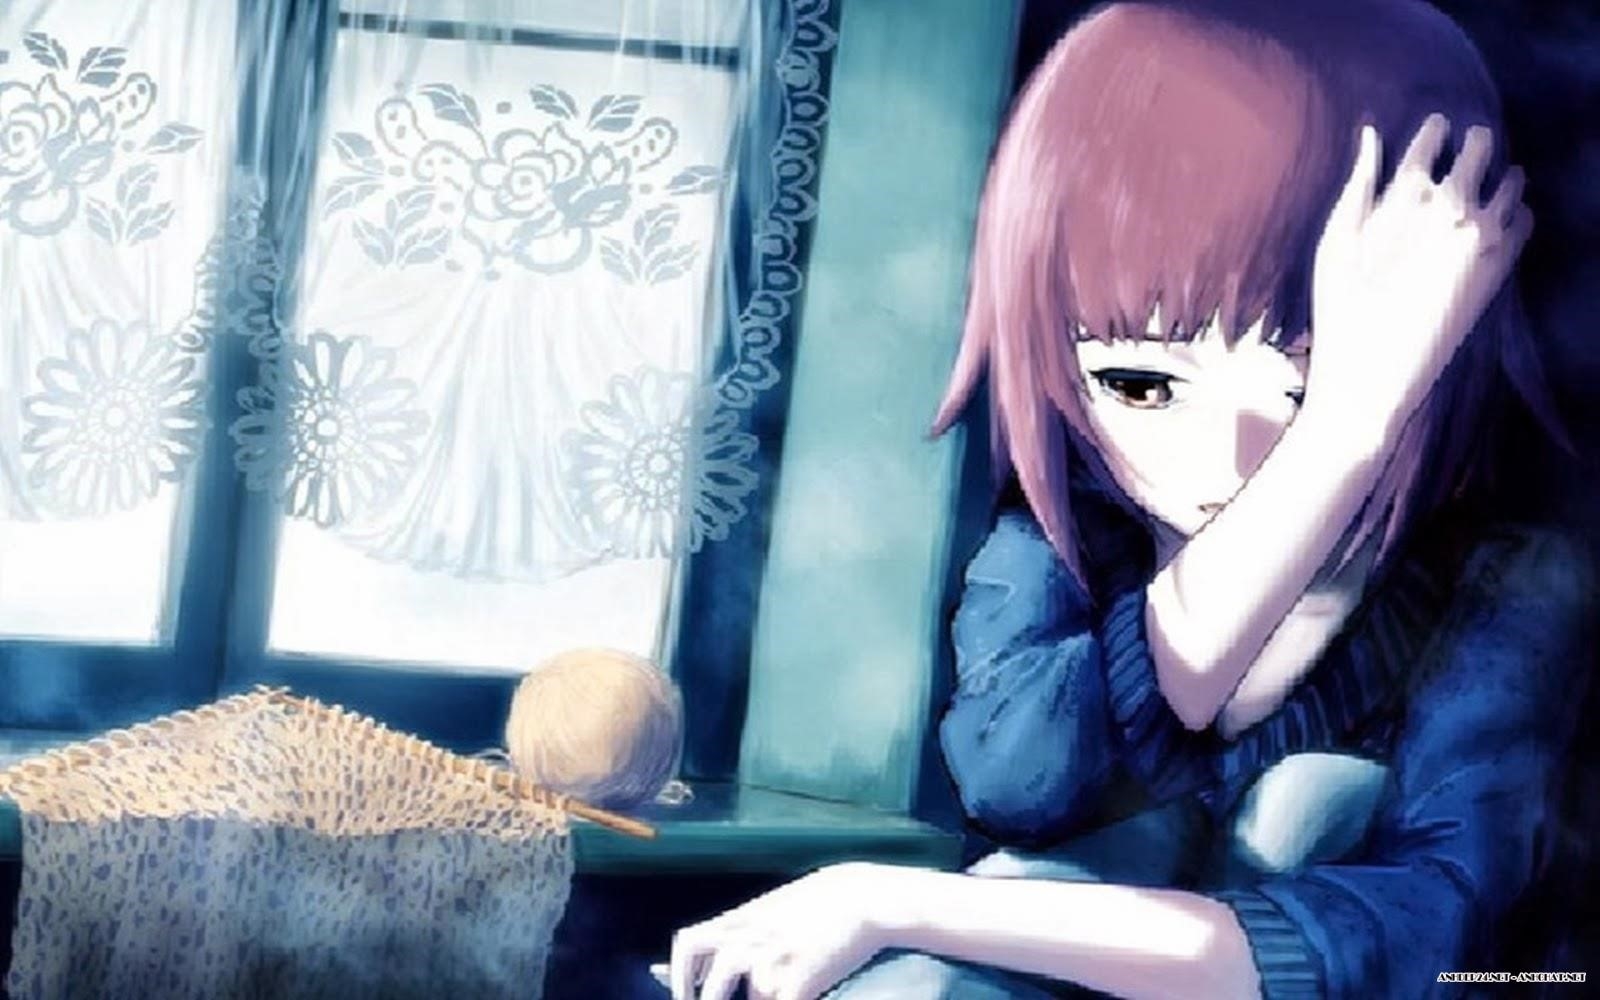 Hình ảnh cho tình yêu đơn phương của cô gái trong anime.